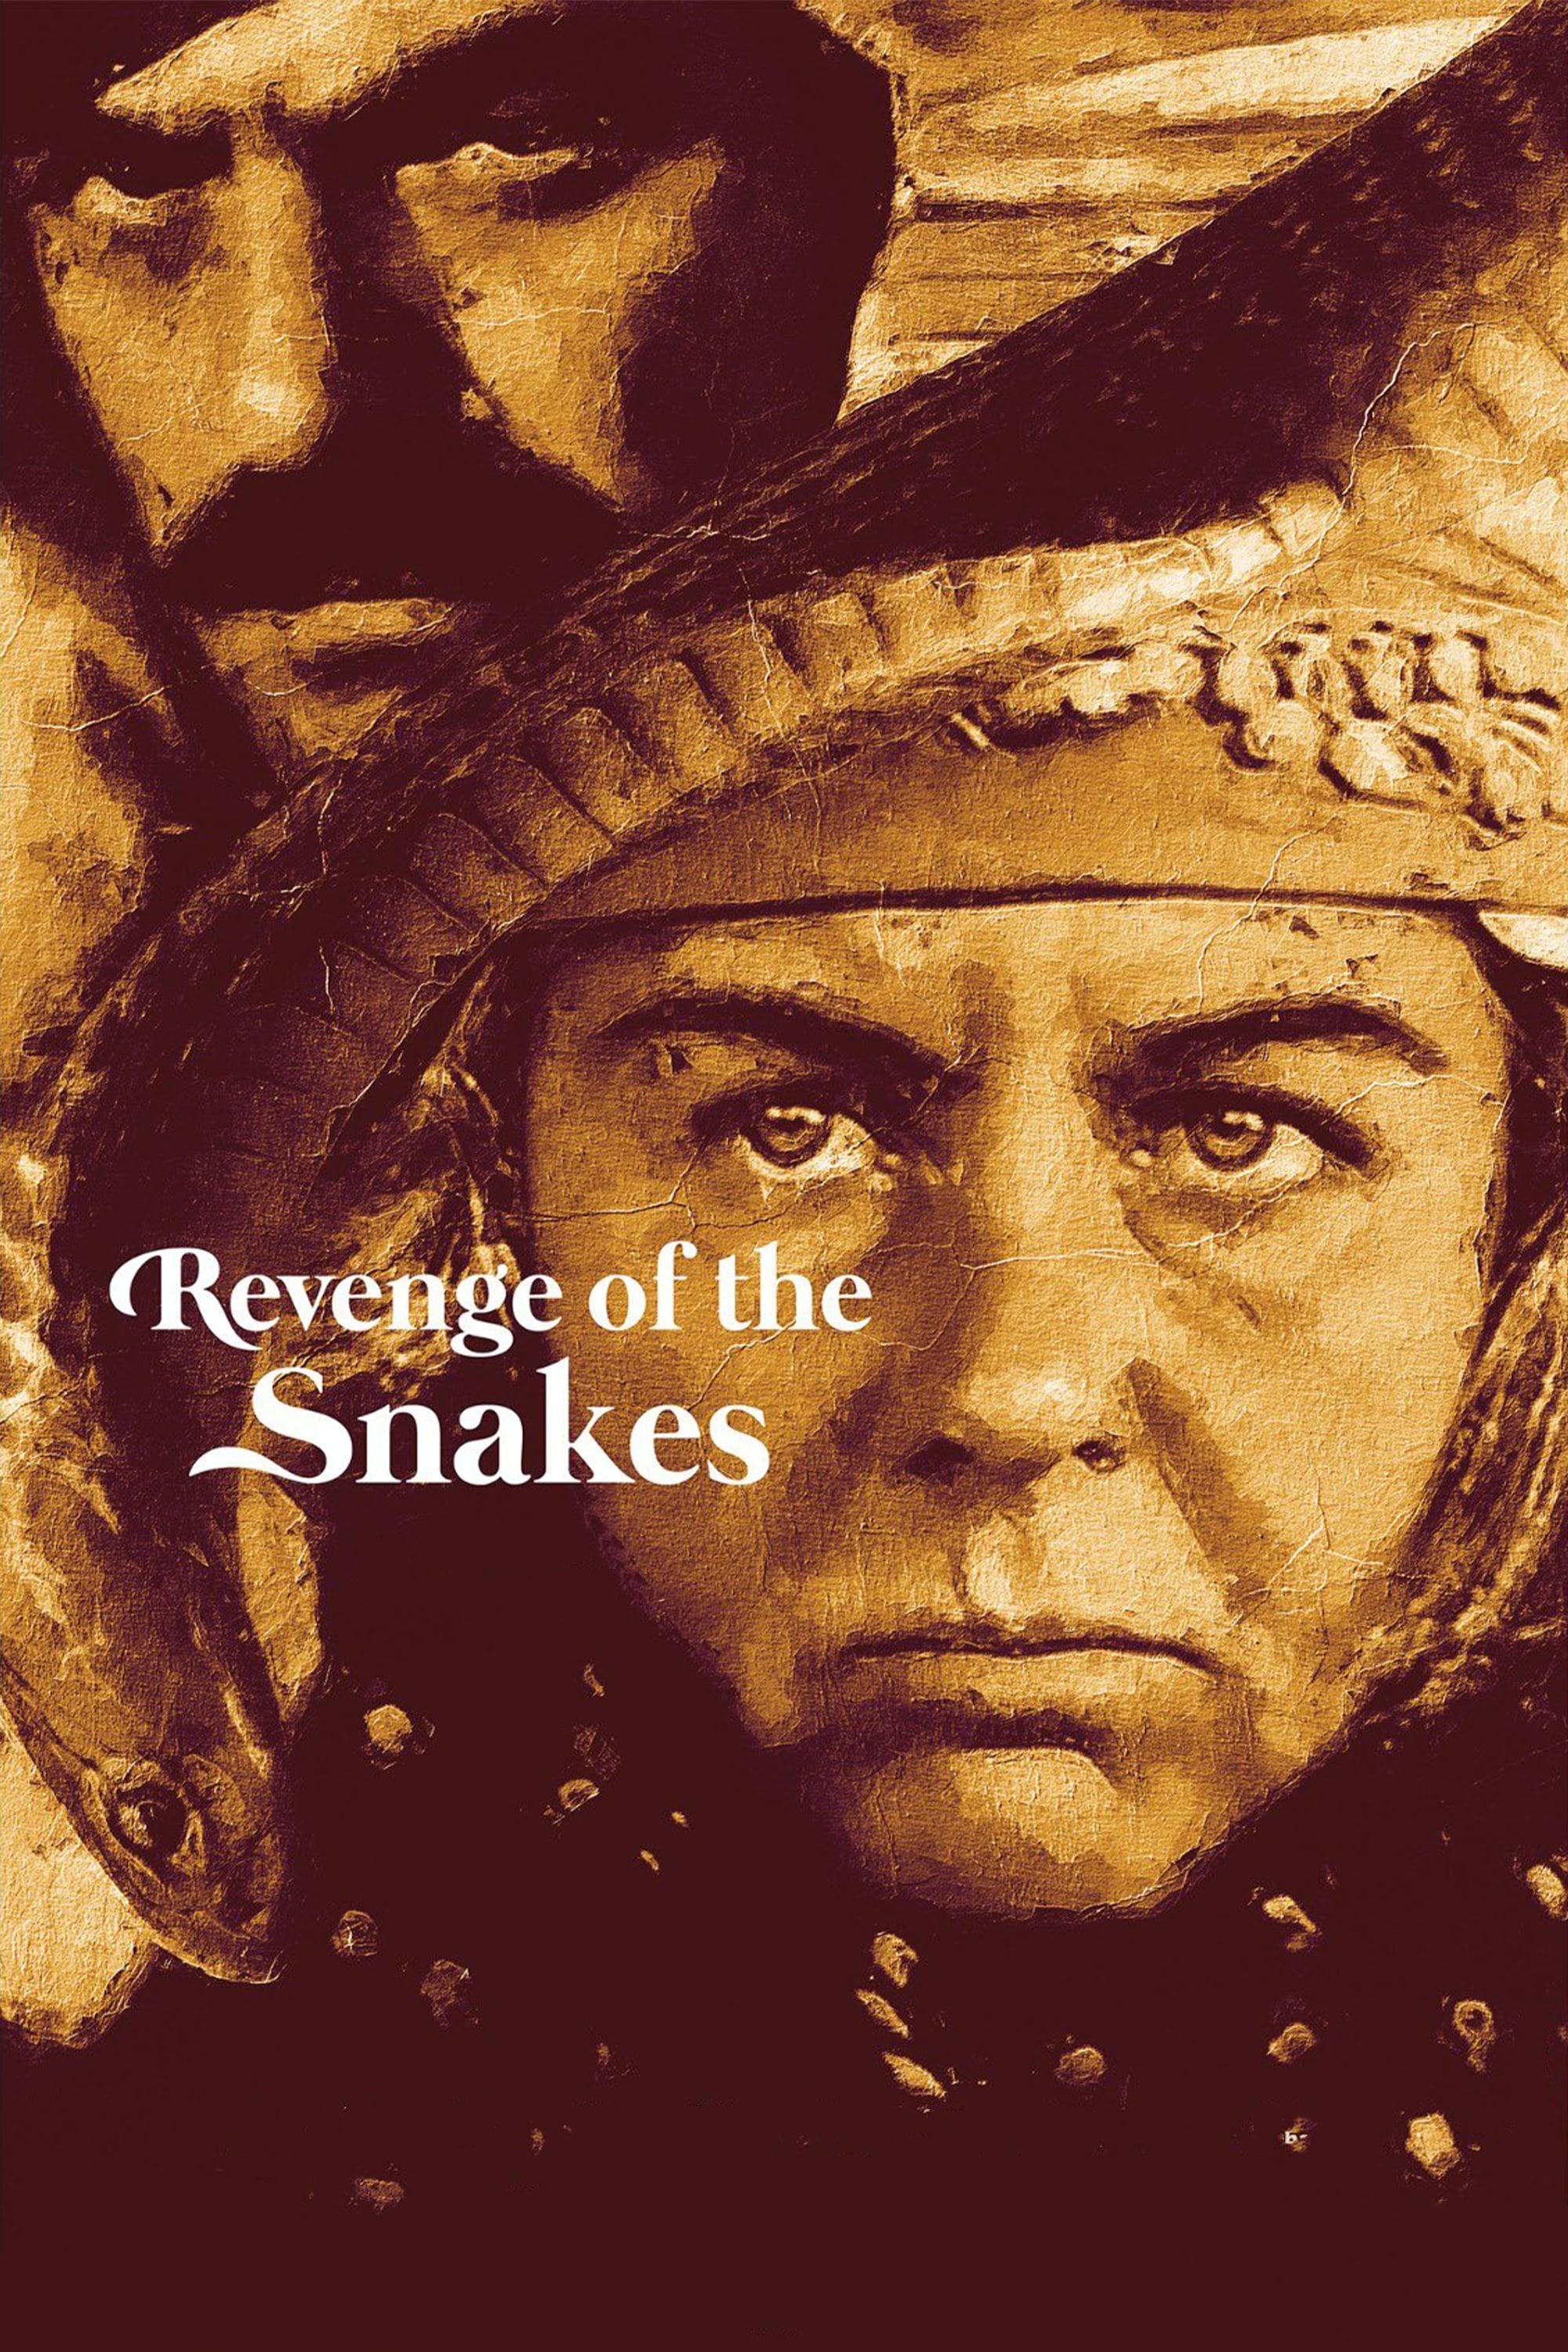 Revenge of the Snakes poster